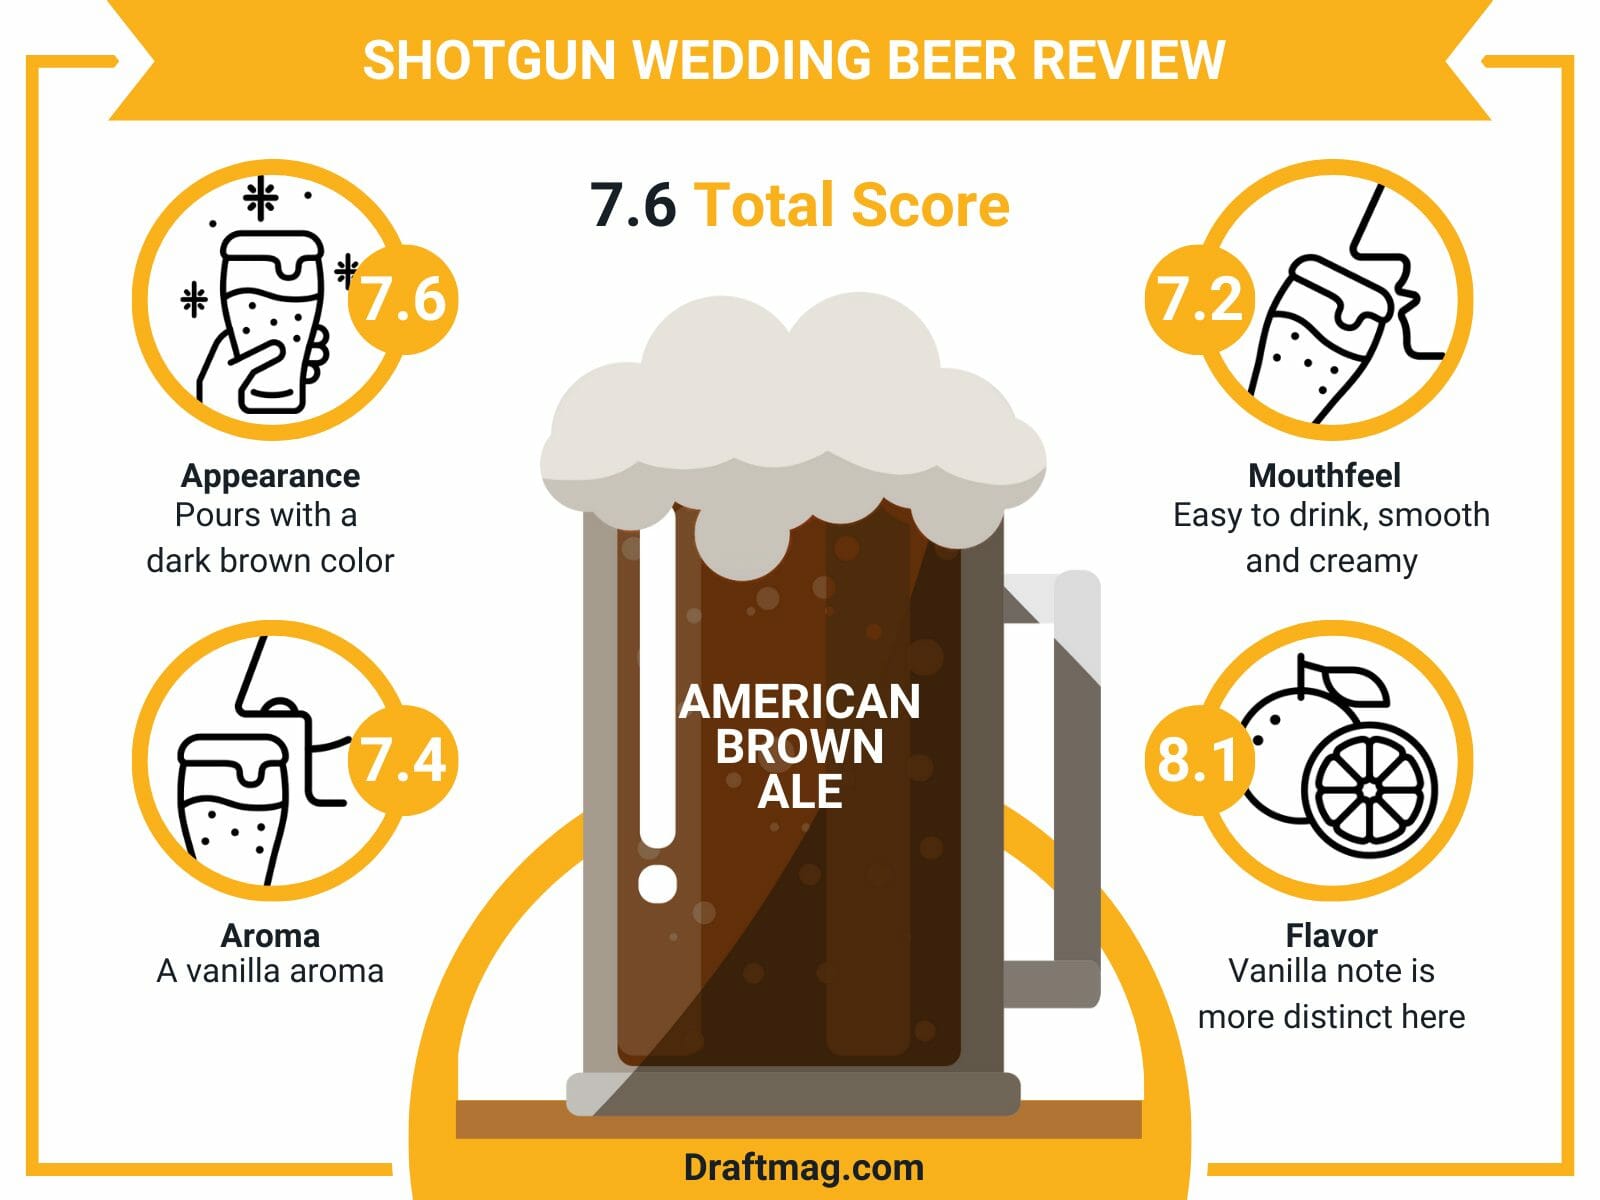 Shotgun wedding beer review infographic